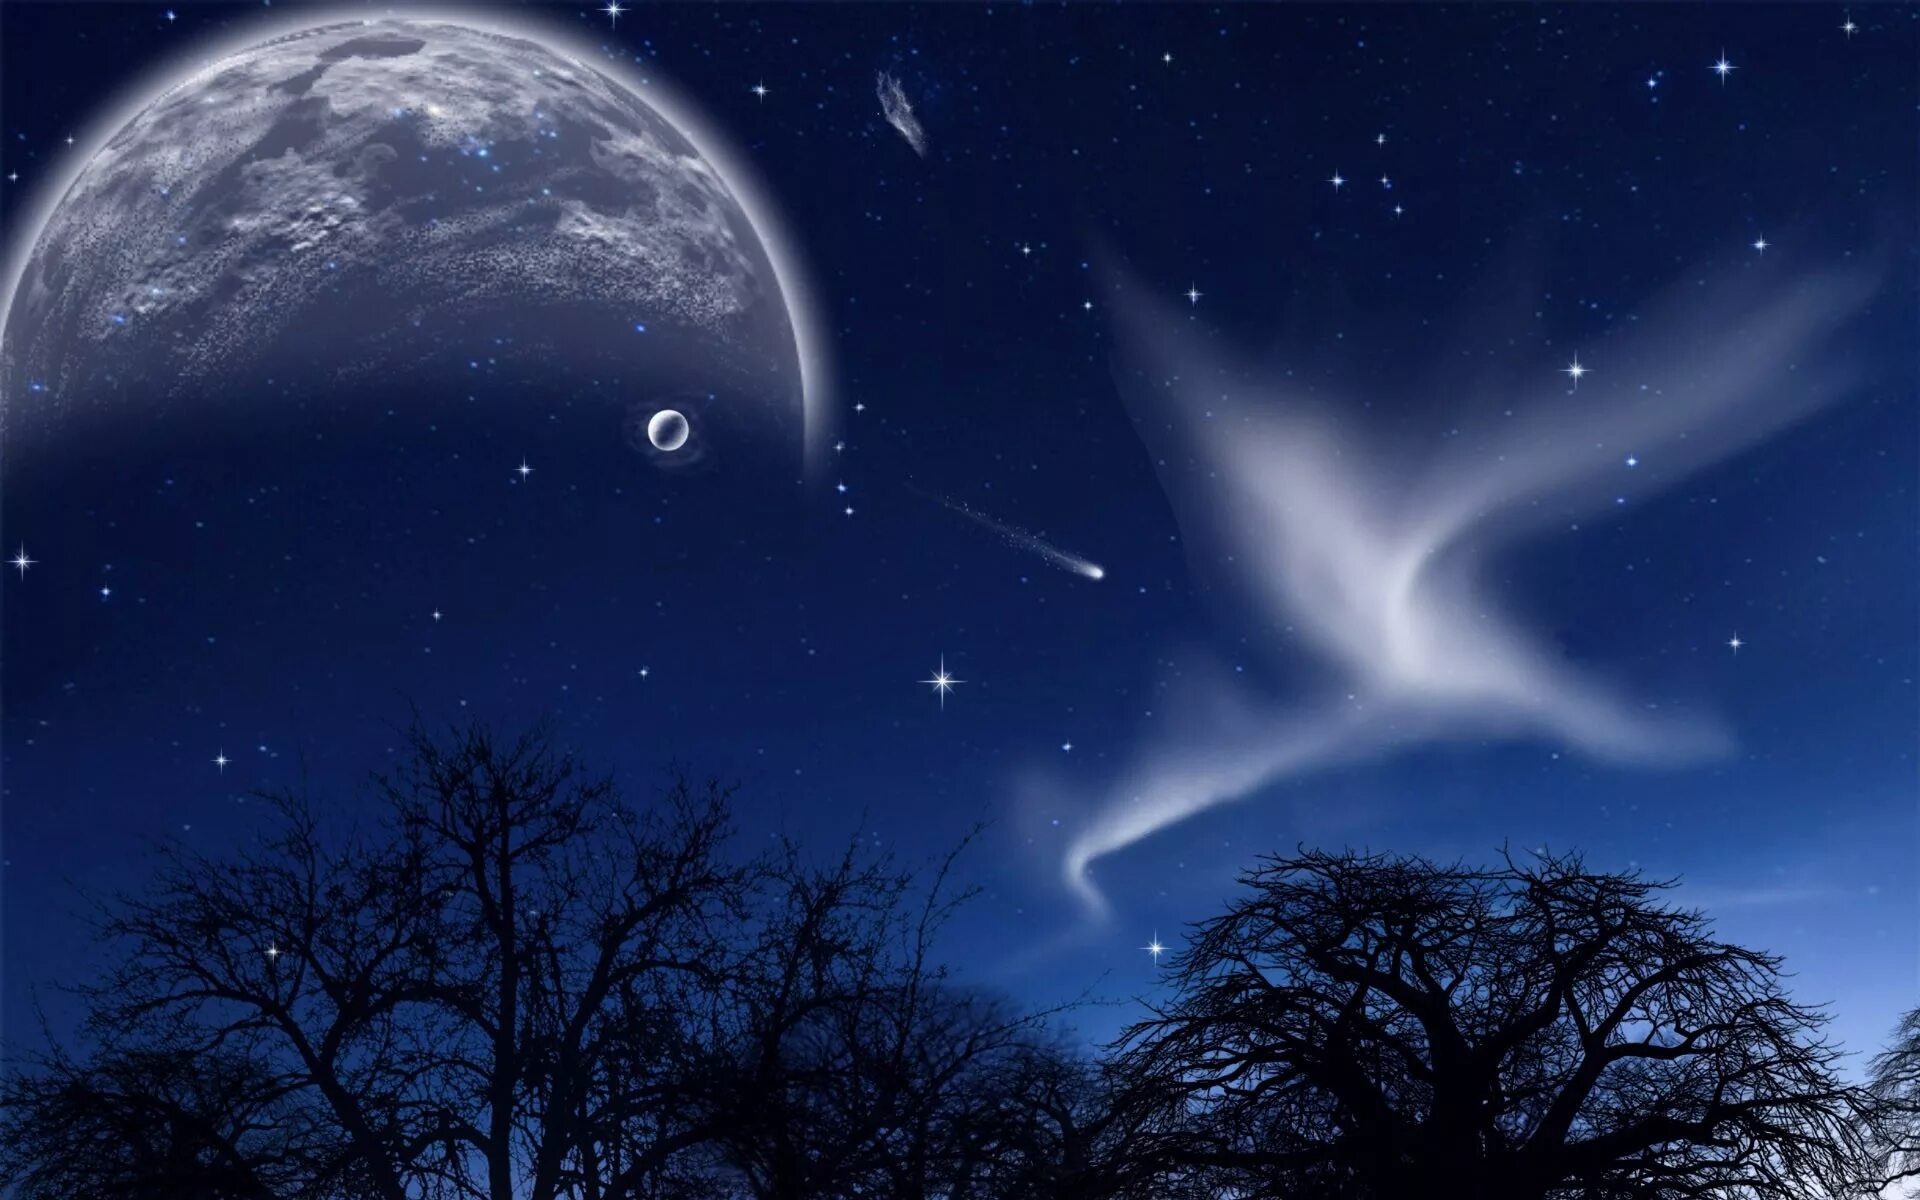 Бесплатные картинки ночи. Ночь Луна звезды. Звезда с неба. Звездное небо с луной. Небо с луной и звездами.